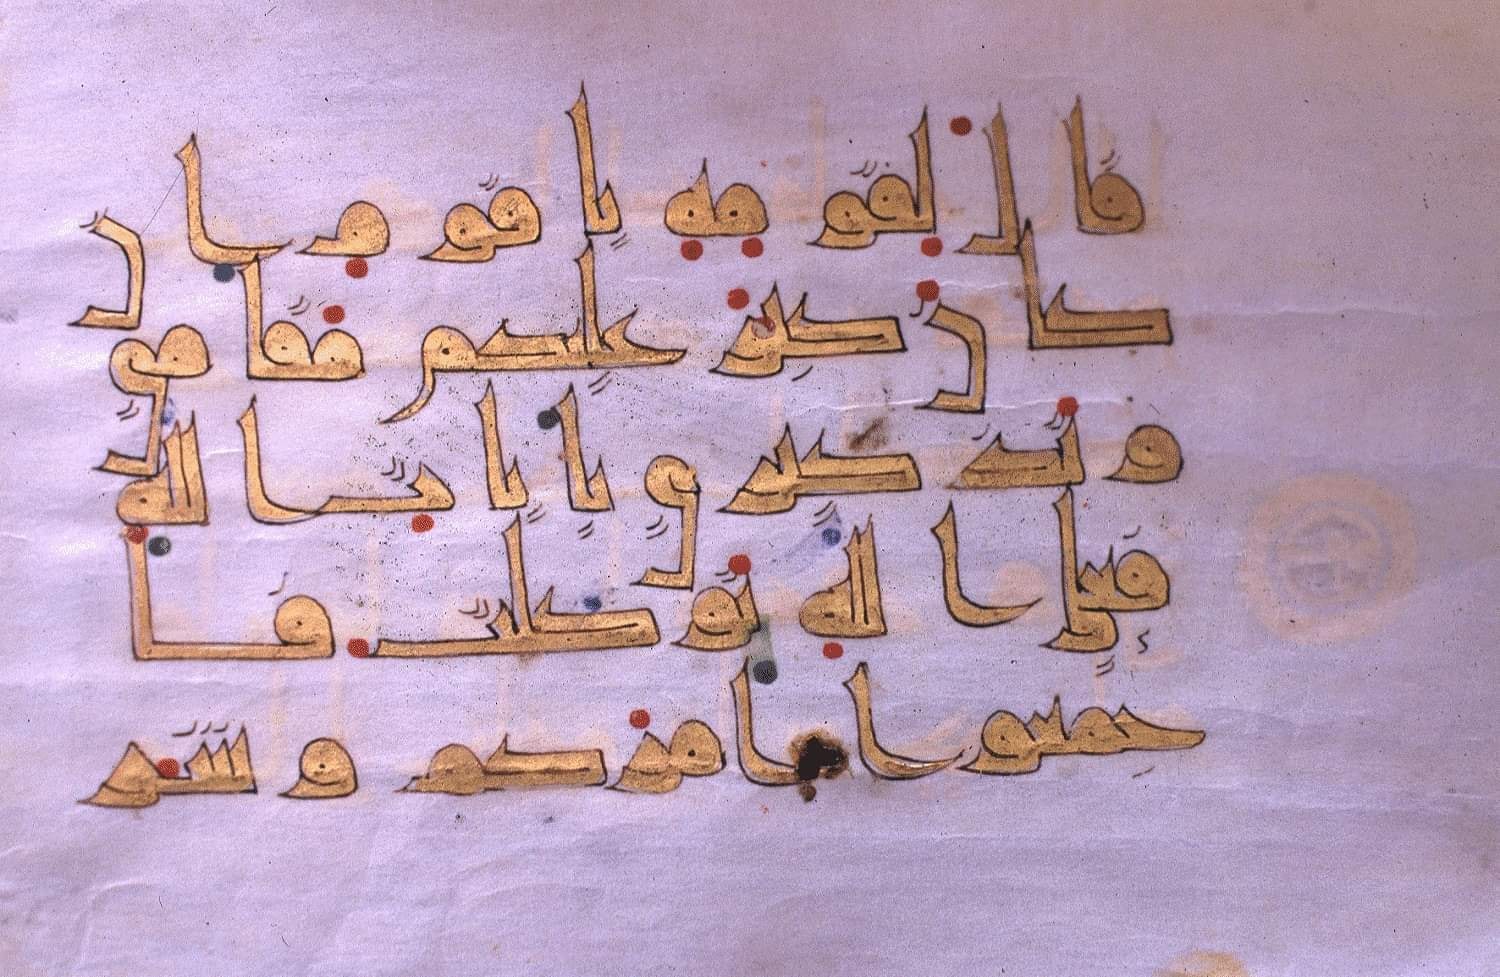 فنون الخط العربي المهارات المعارف والمماراسات